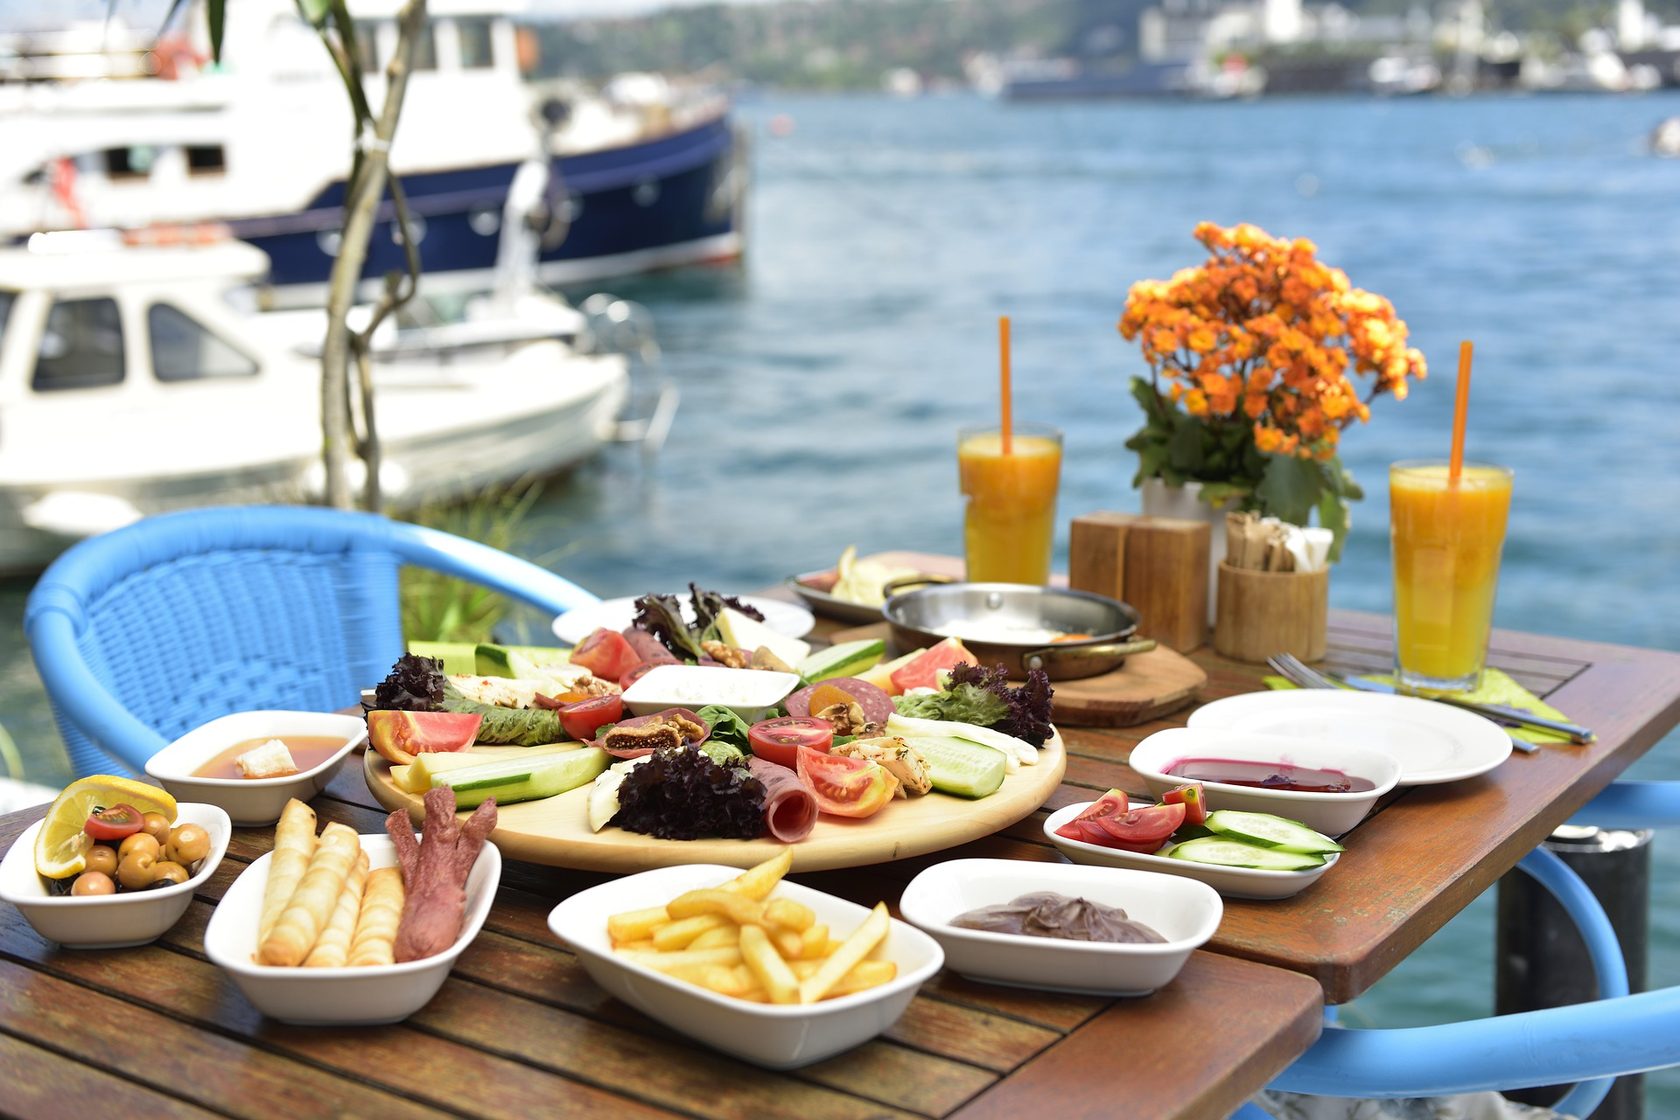 Завтрак в Турции традиционный